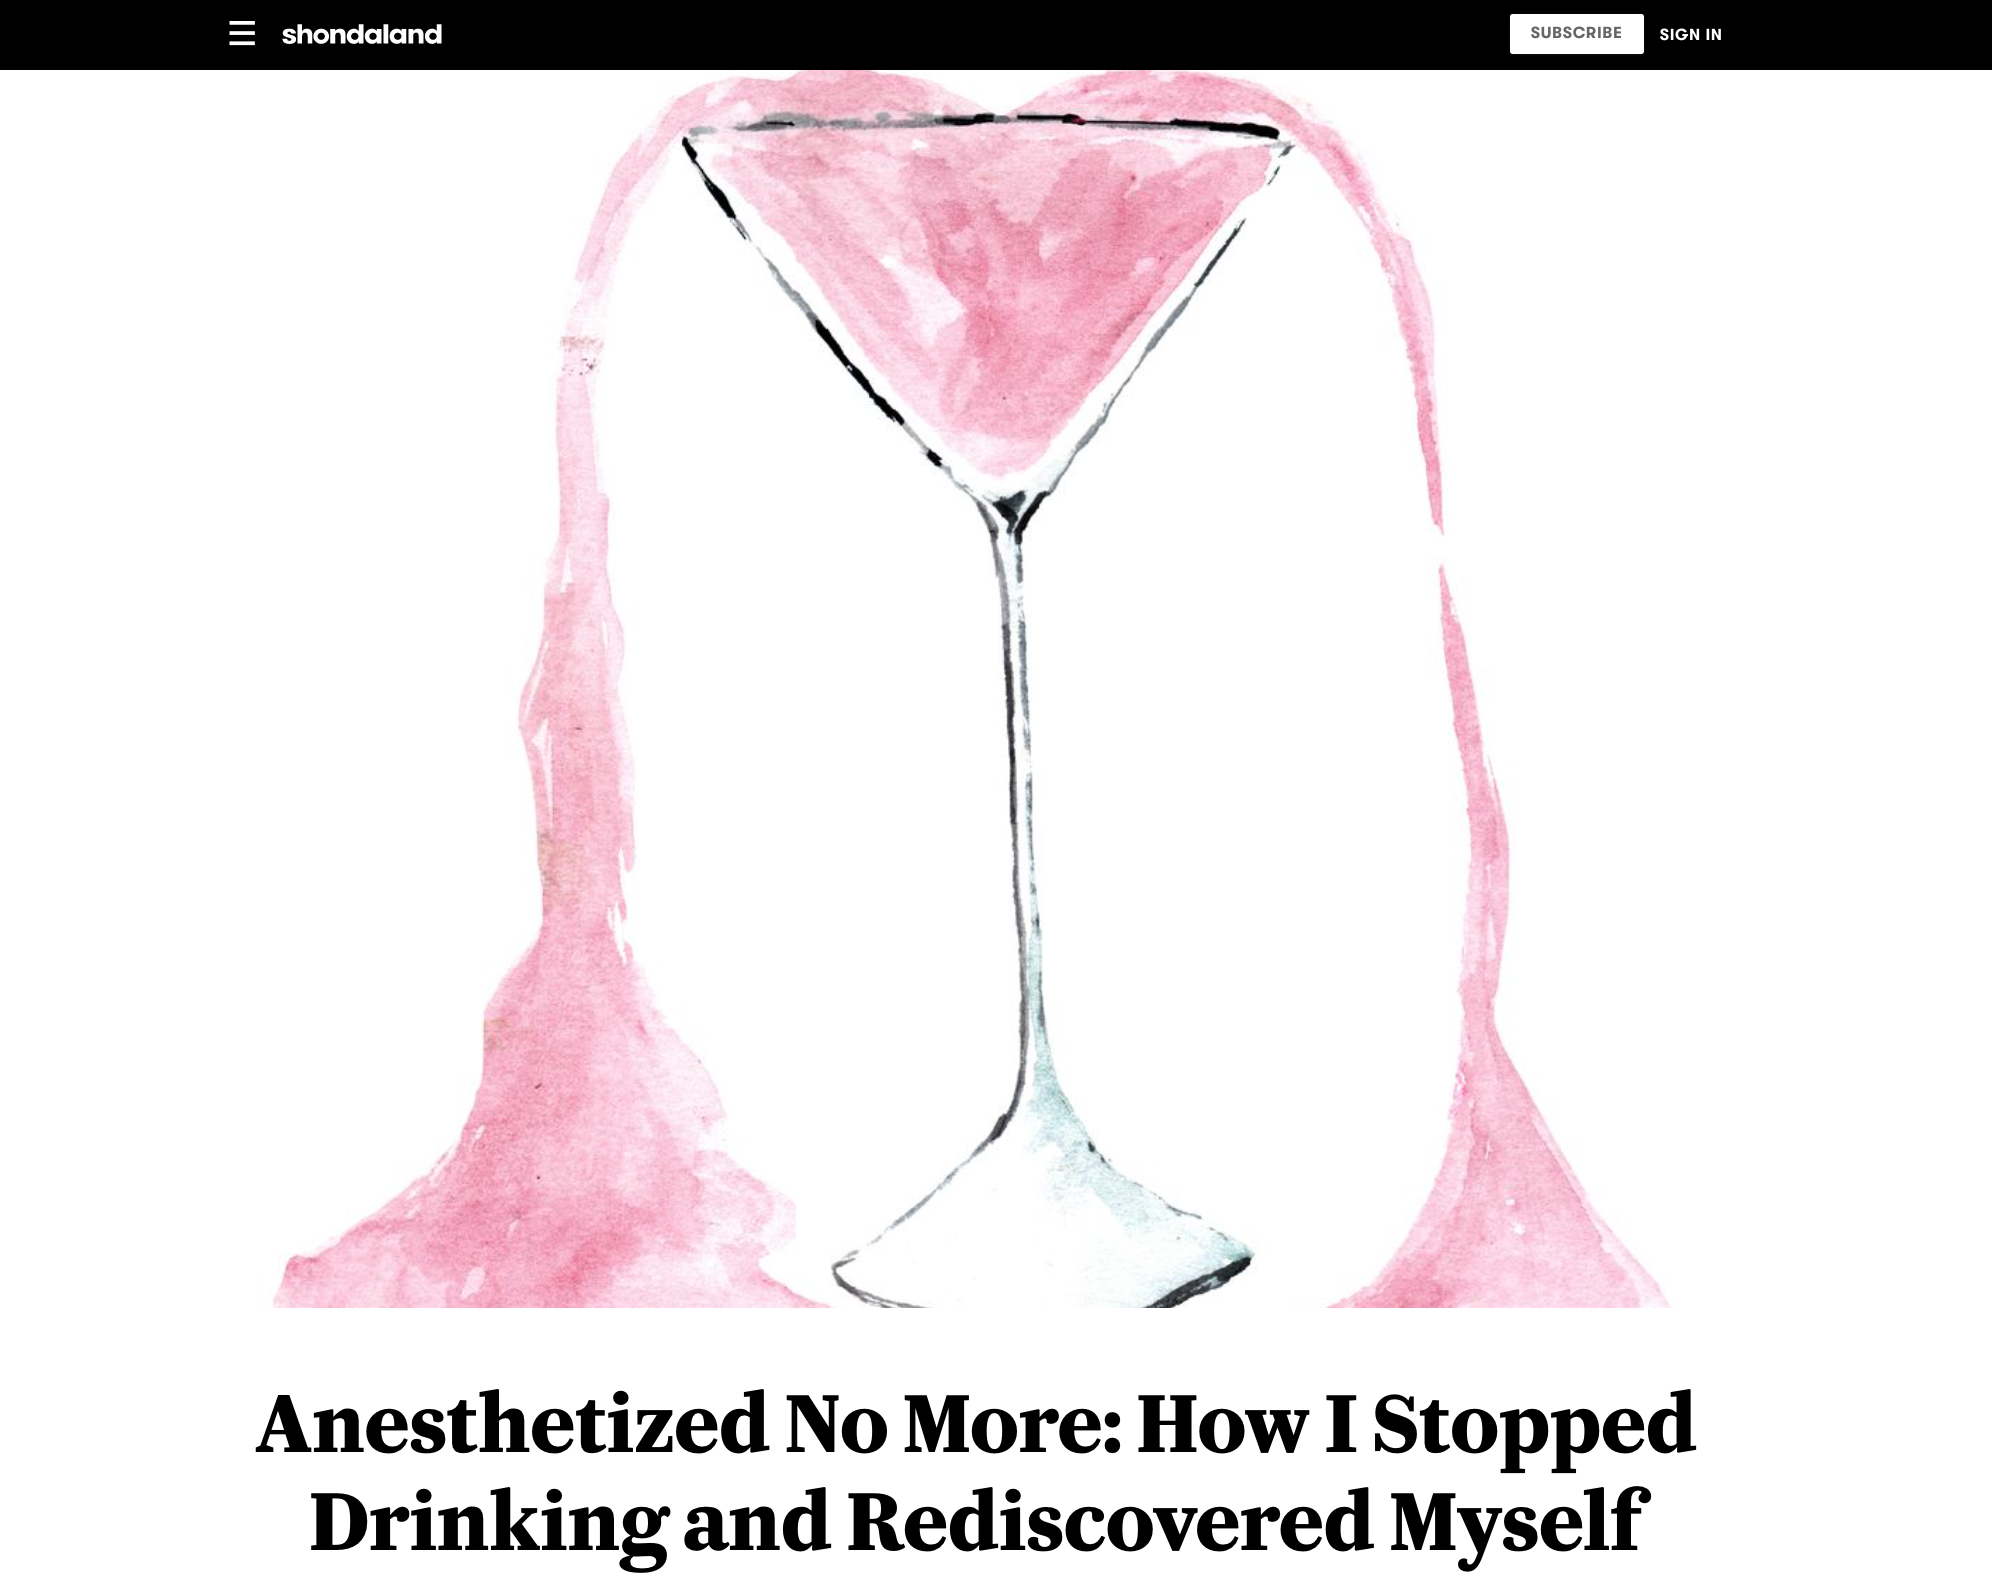 “Anesthetized No More,” Shondaland.com, June 2019  (Copy)